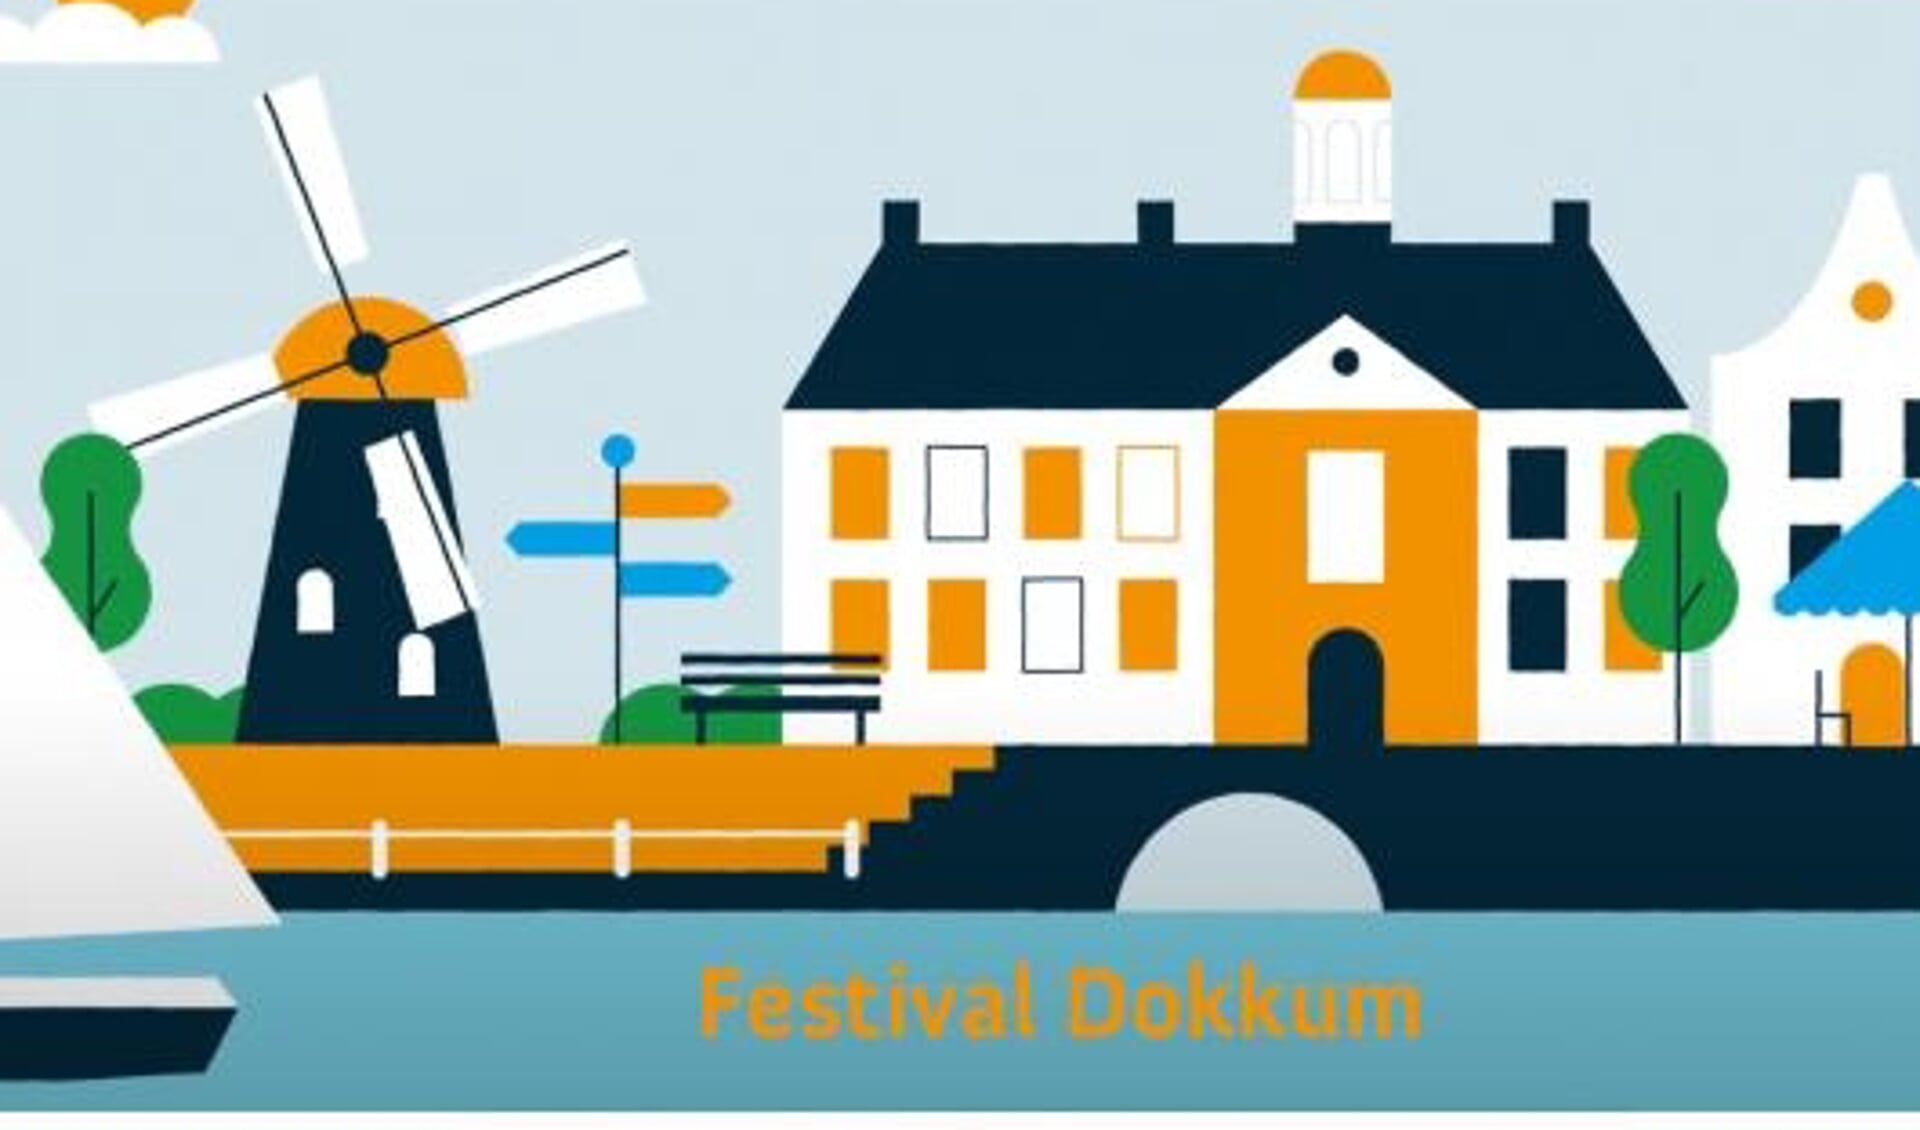 'Festival Dokkum' nodigt uit mee te praten over de toekomst van Dokkum.